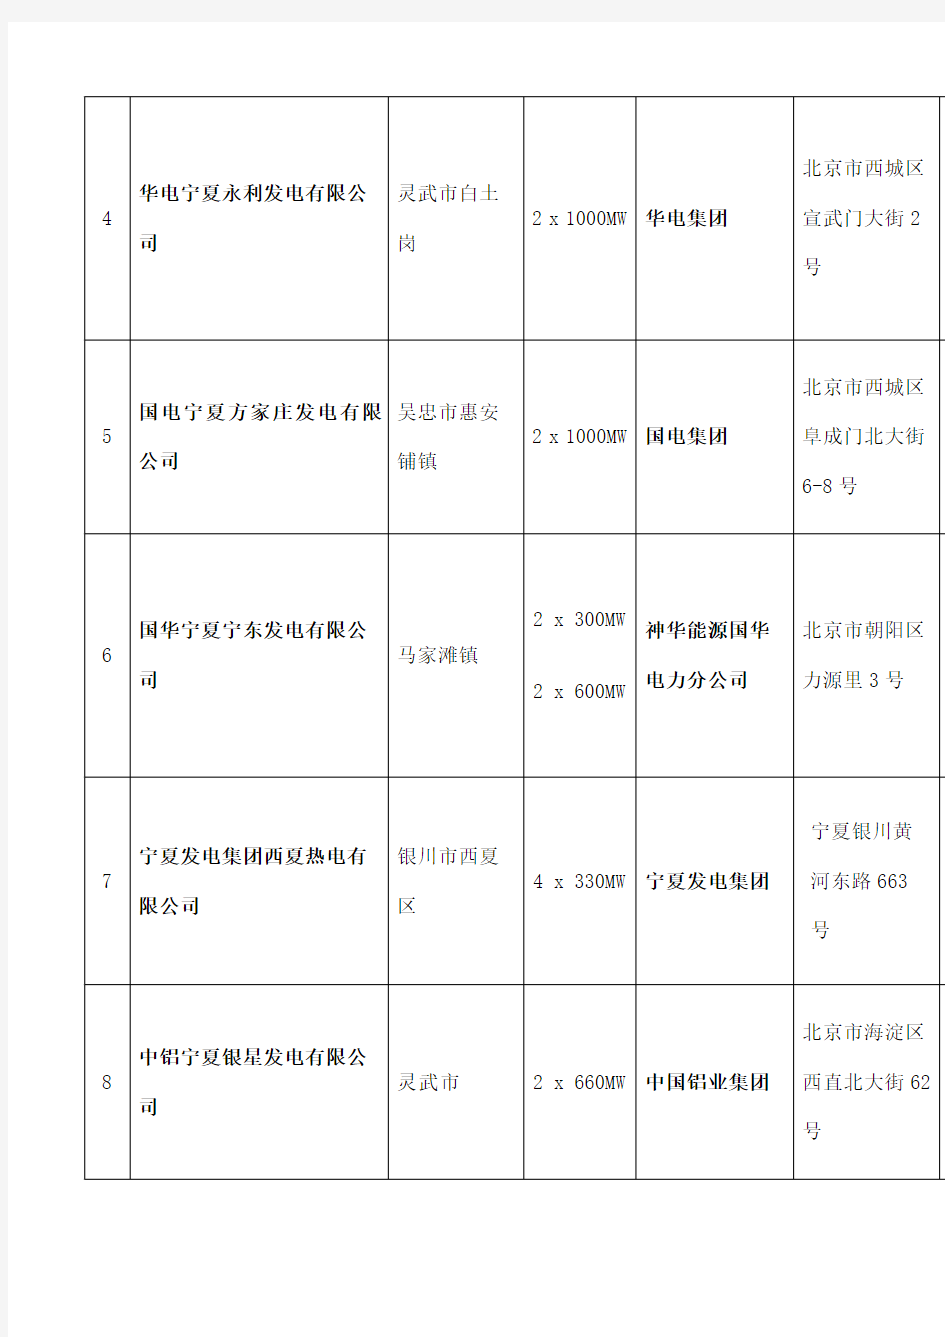 宁夏自治区主要火力发电厂分布表